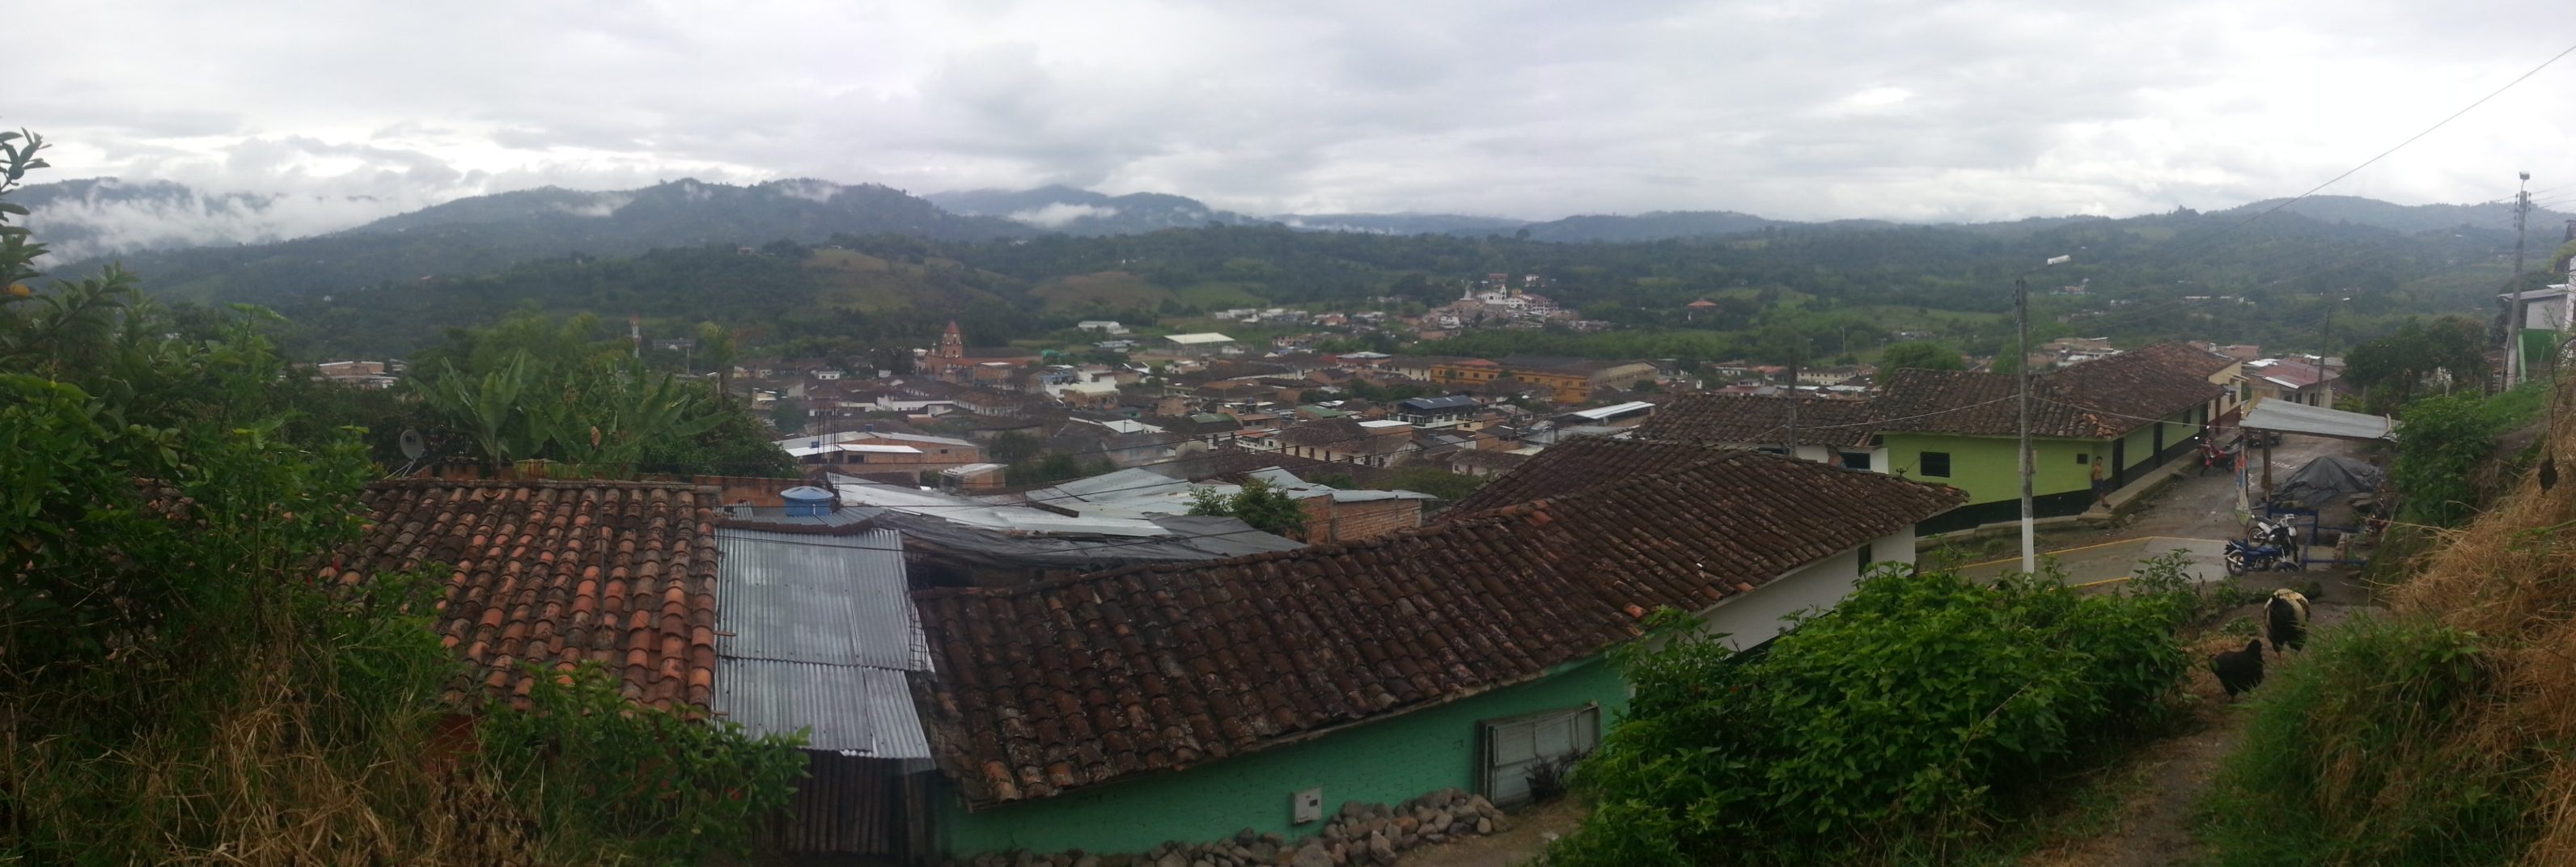 San Agustín, Huila, Colombia.